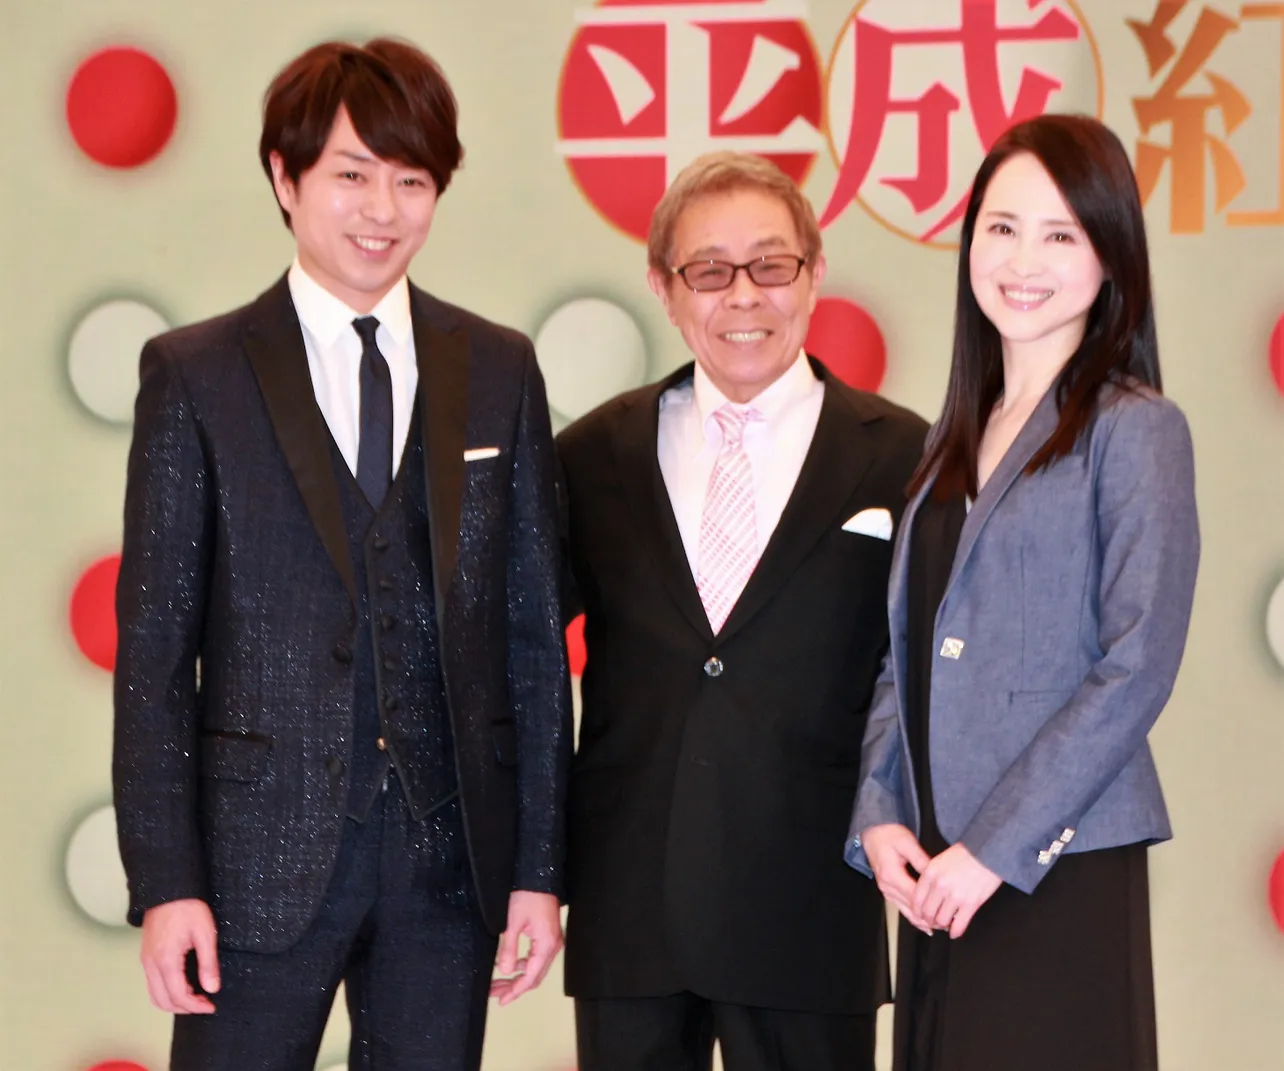 囲み取材に応じた(左から)櫻井翔、北島三郎、松田聖子